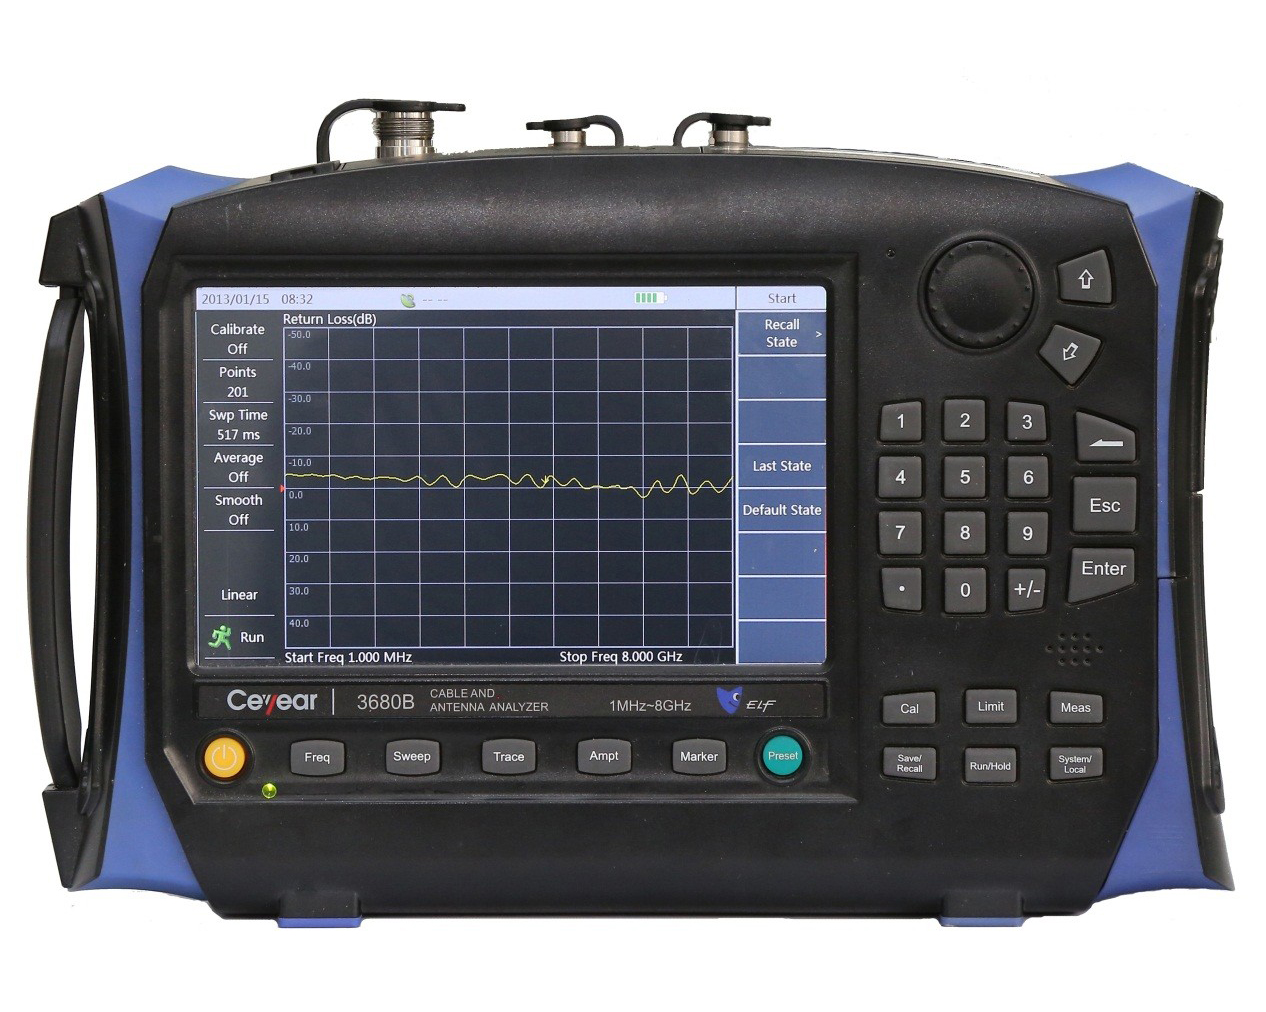 Анализатор кабелей и антенн <b>Ceyear серии 3680:</b> 3680A/B с диапазоном частот от 1 МГц до 8 ГГц